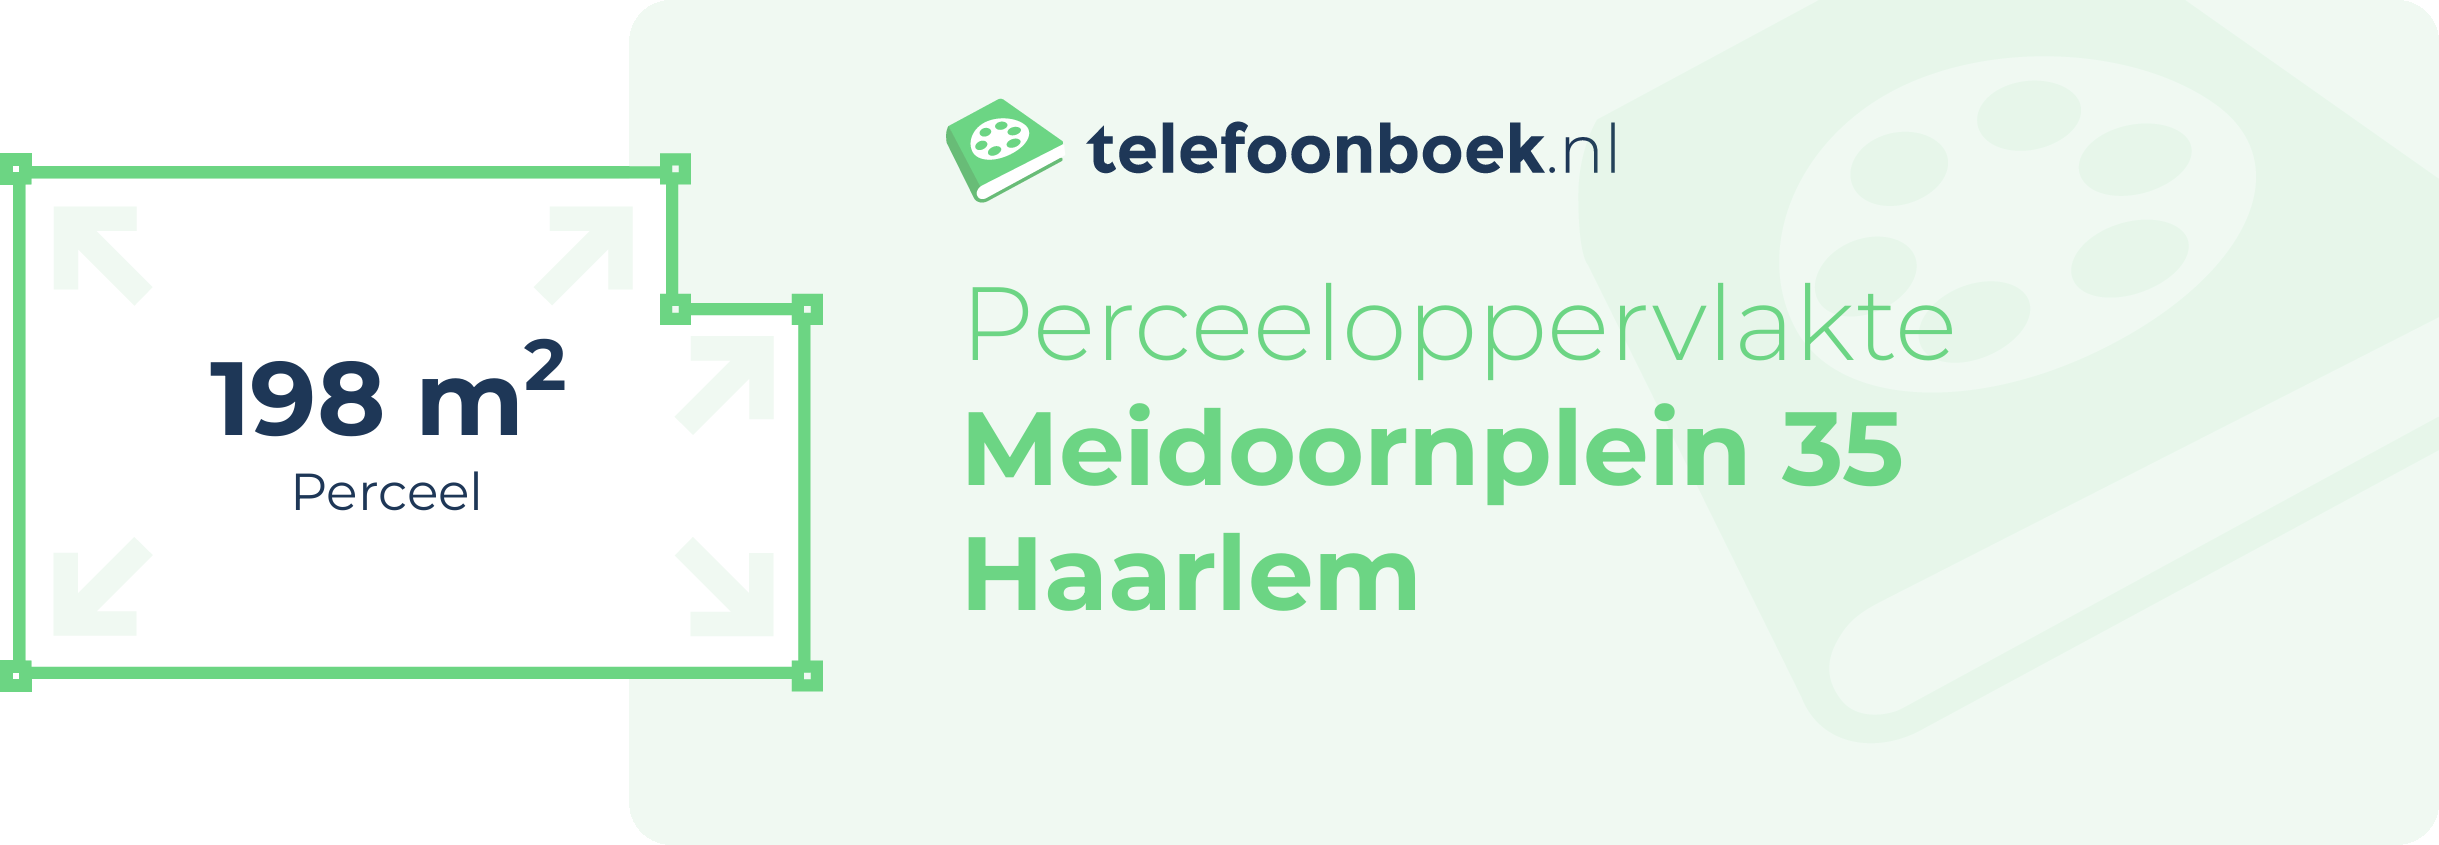 Perceeloppervlakte Meidoornplein 35 Haarlem